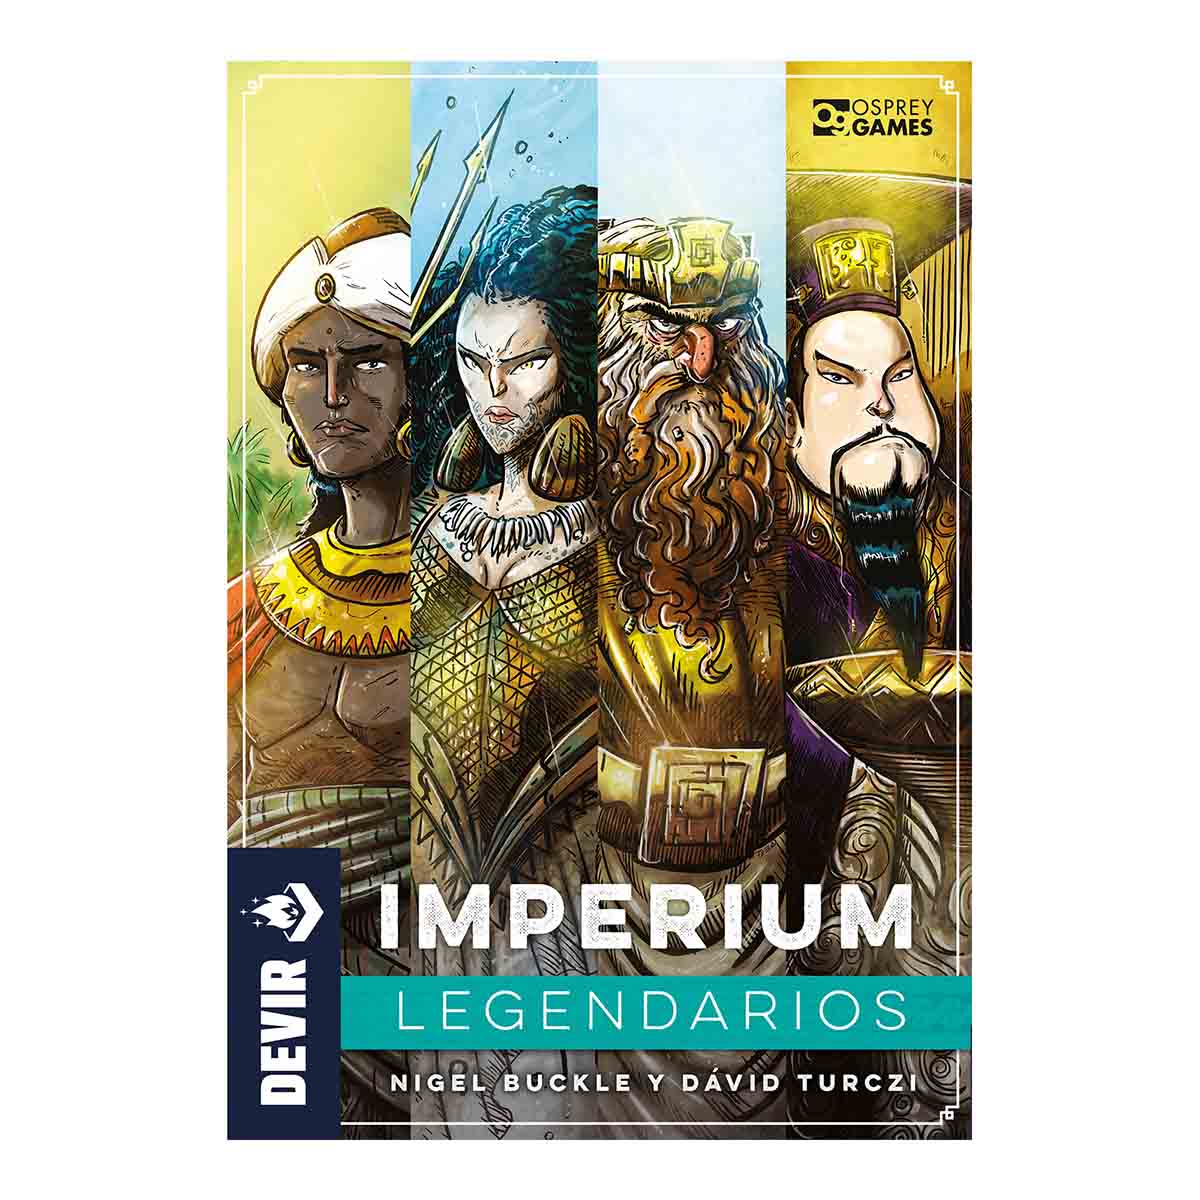 Imperium_Legendarios_1200x1200_front